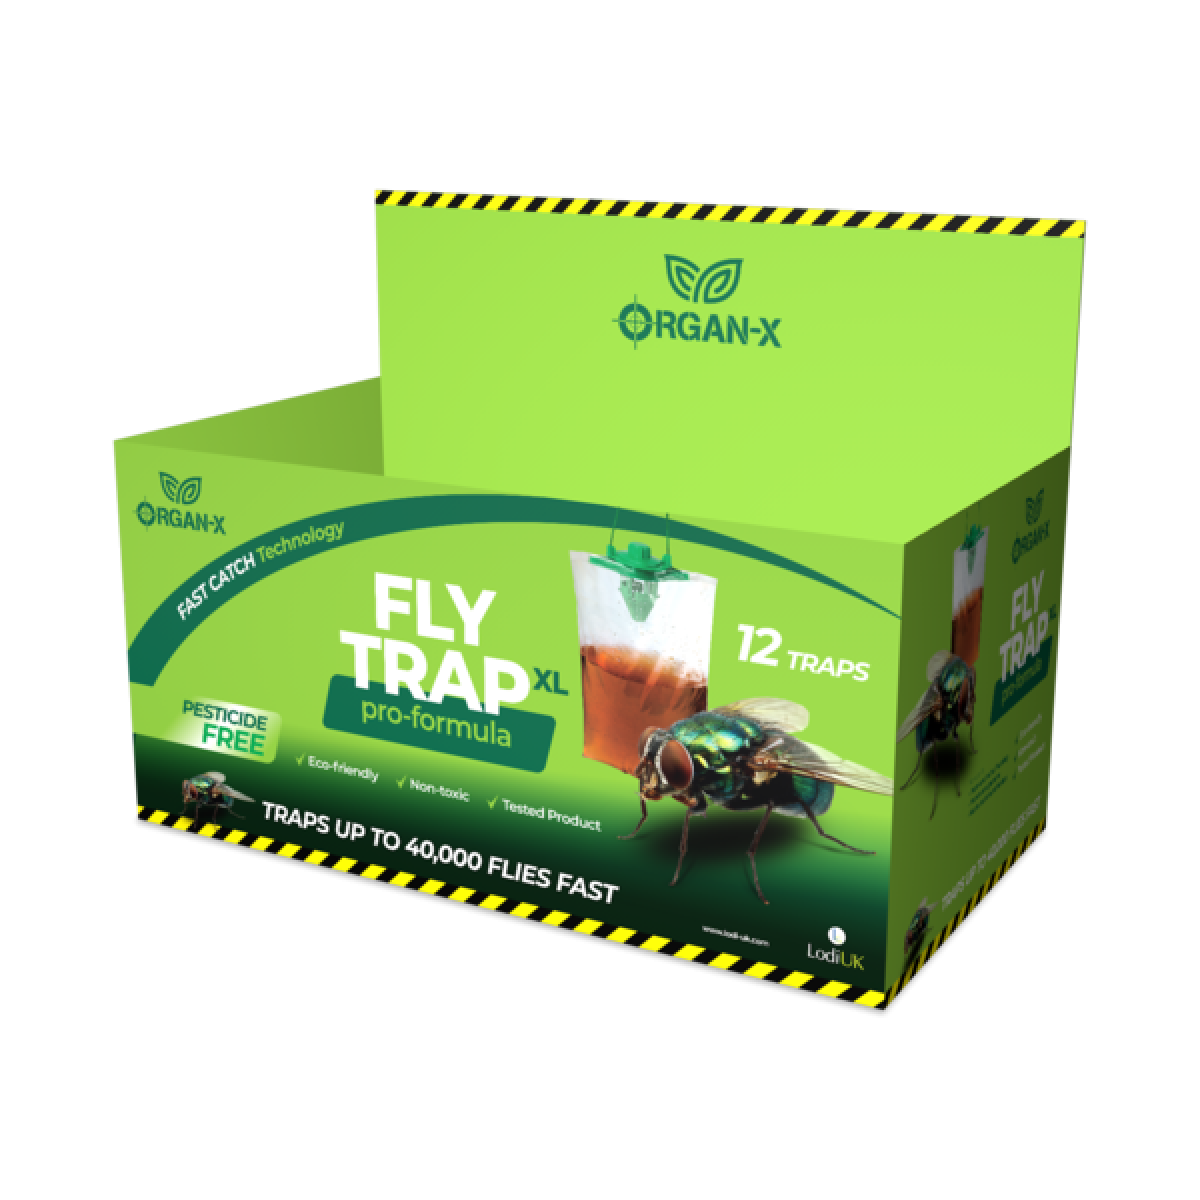 Organ-X Pro-Formula Fly Trap XL